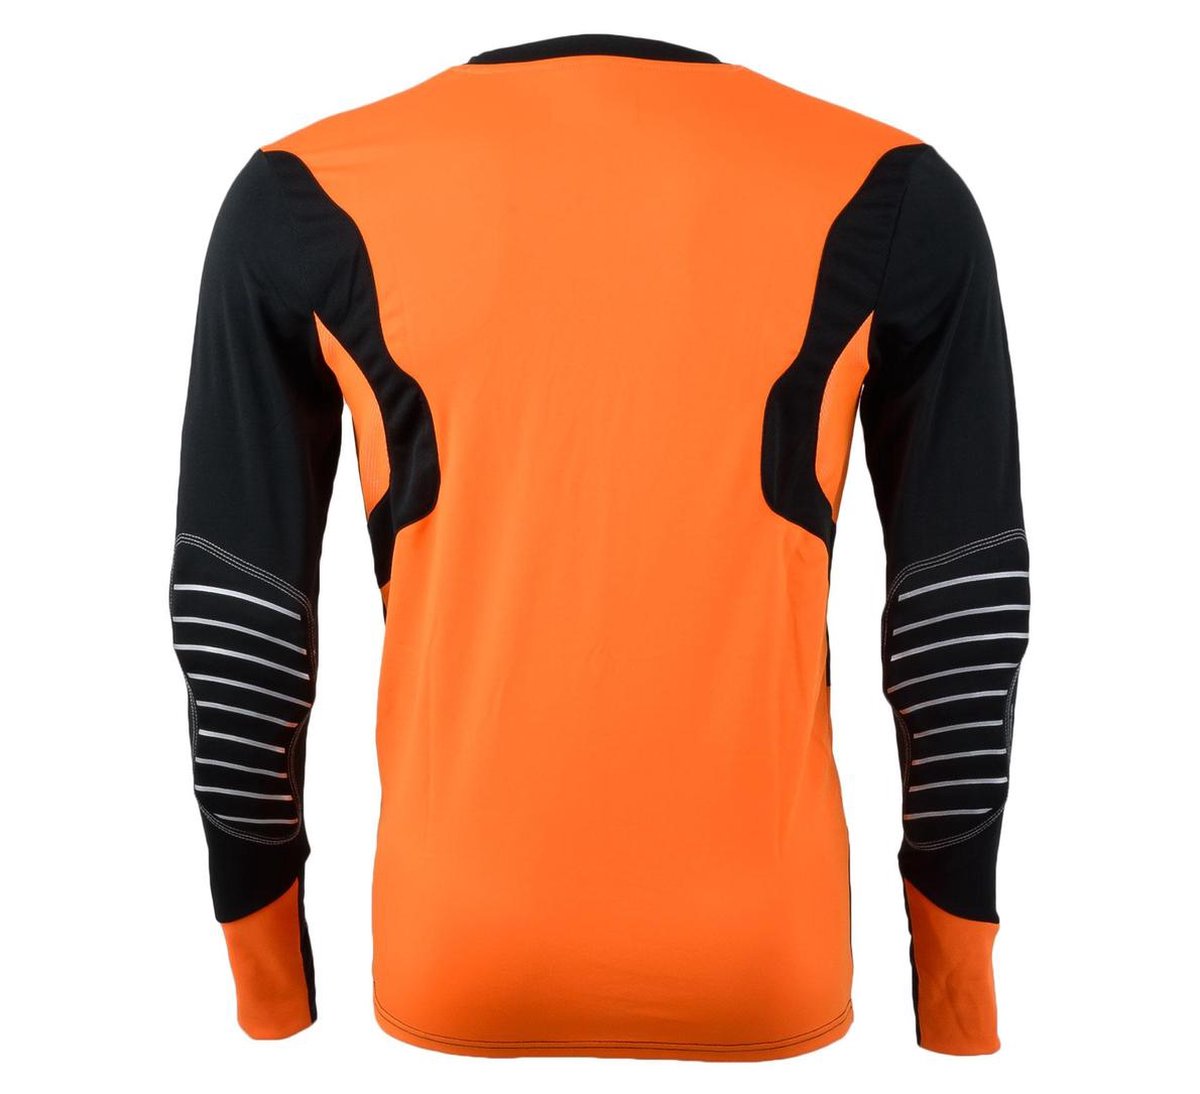 meer Hoes heroïsch Uhlsport Ergonomic GK Shirt - Keepersshirt - Heren - Maat L - Zwart/Oranje  | bol.com